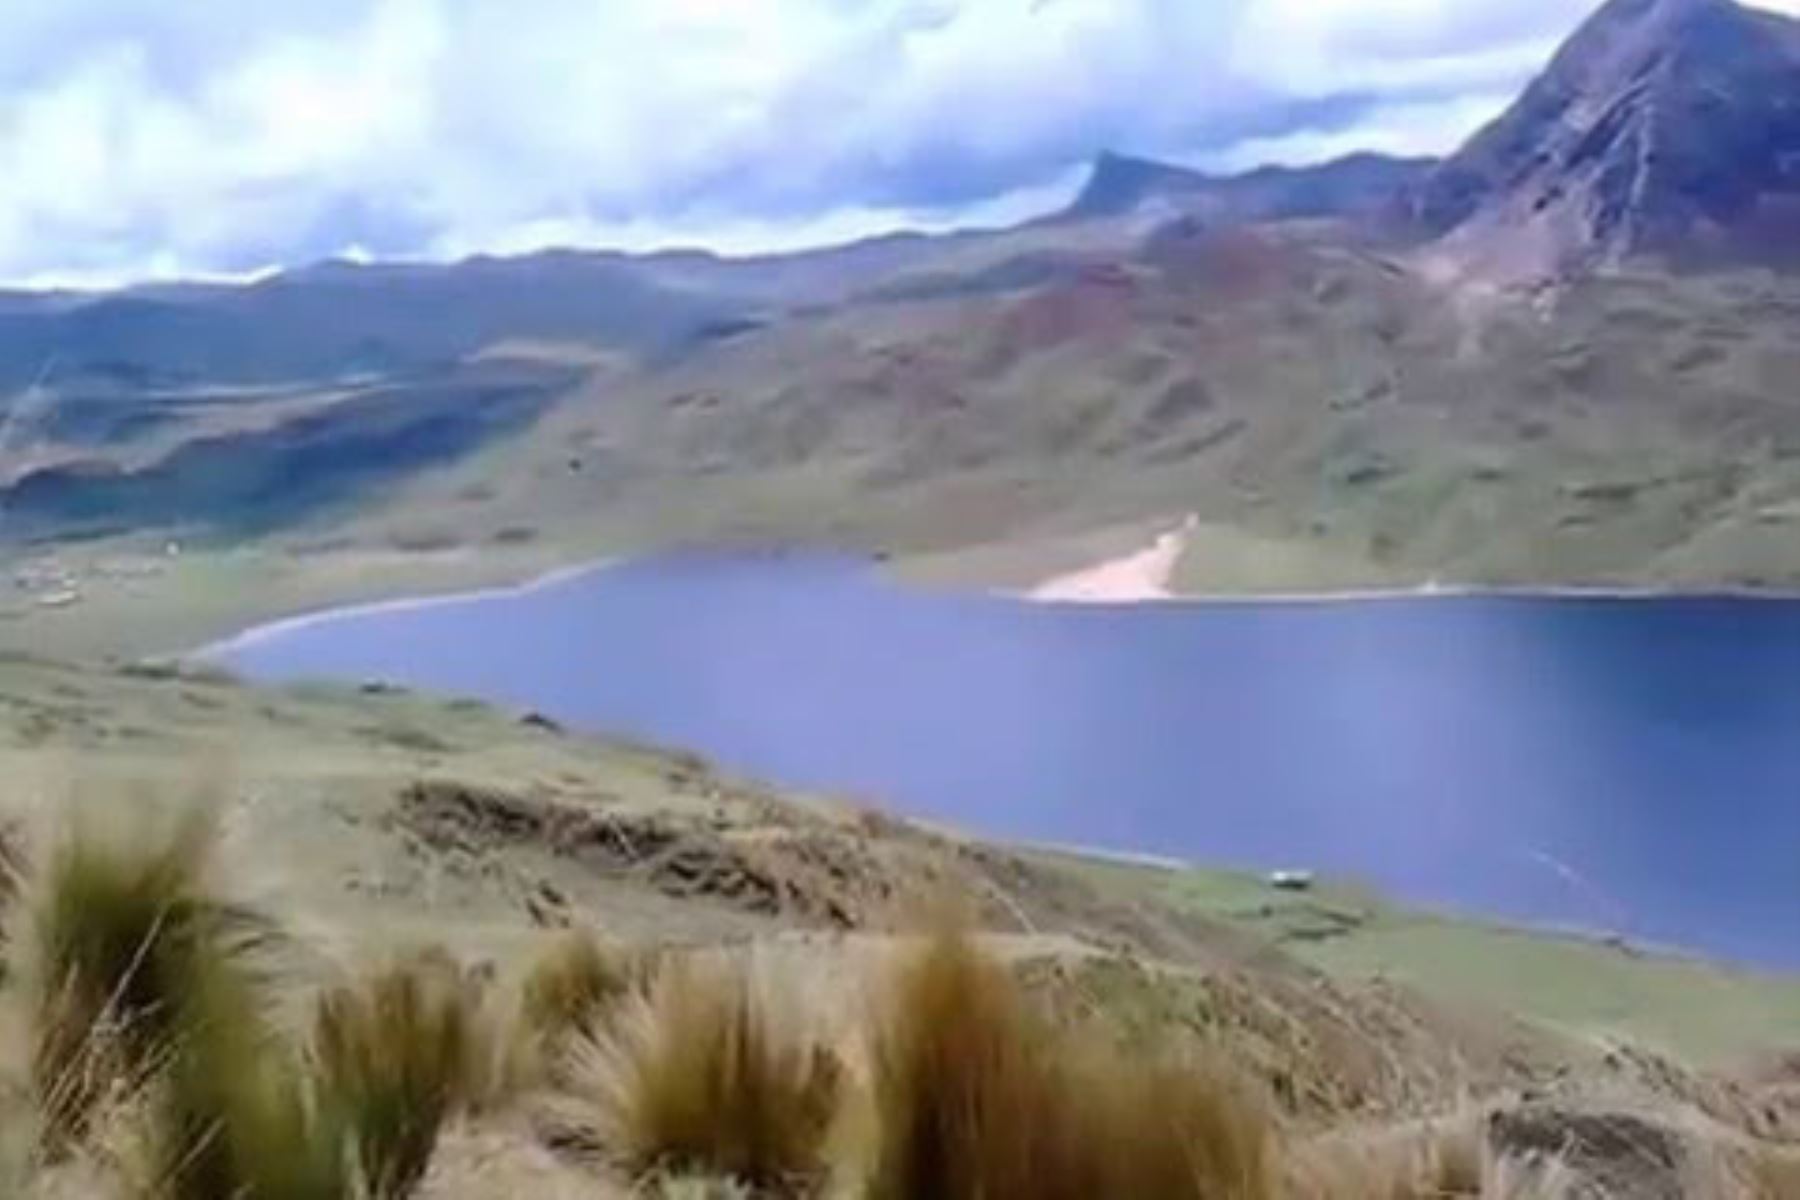 Efectivos de la Policía Nacional del Perú confirmaron el hallazgo, en el lago Llaullicocha, del cadáver de la joven estudiante Ángela Carmelino Caituiro, de 18 años de edad, reportada como desaparecida desde el 19 de este mes en la provincia cusqueña de Calca.